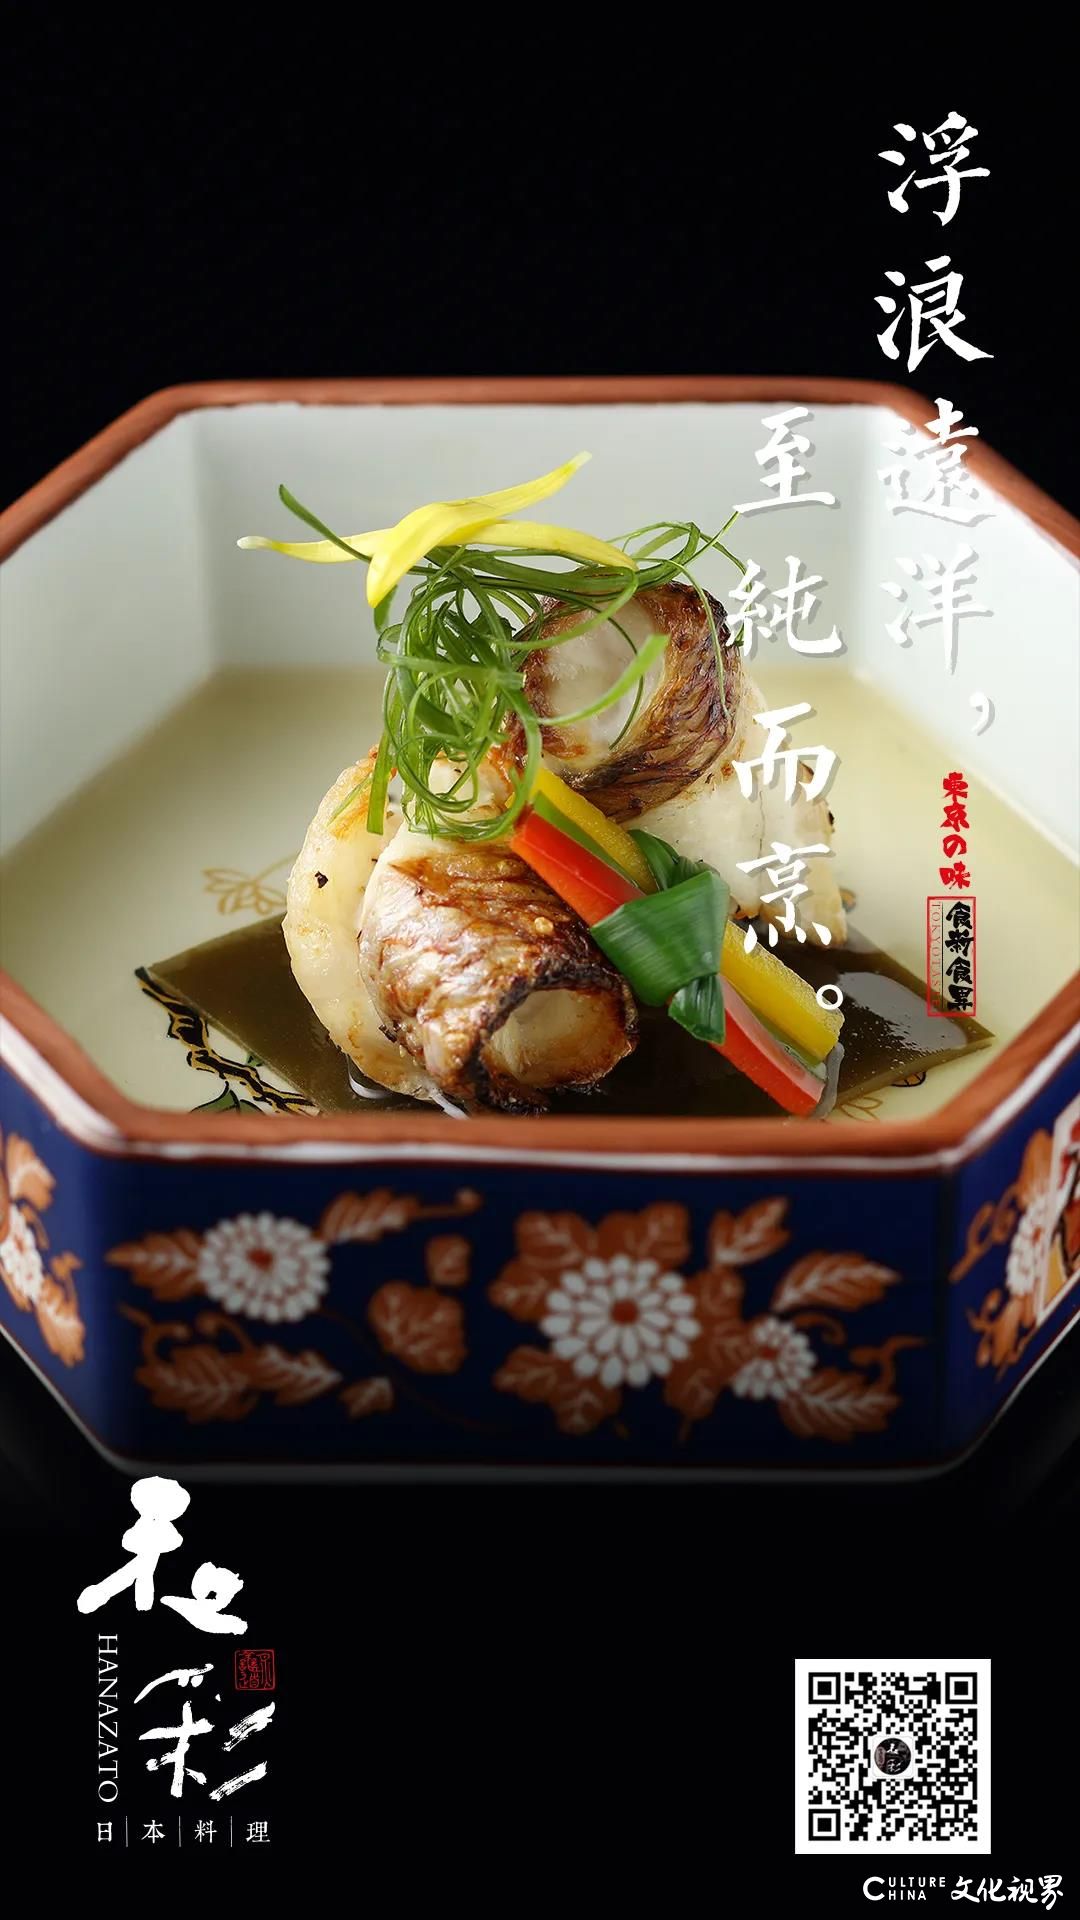 品新菜，知春味——济南和彩日本料理菜品上新，与春天的鲜香美味撞个满怀